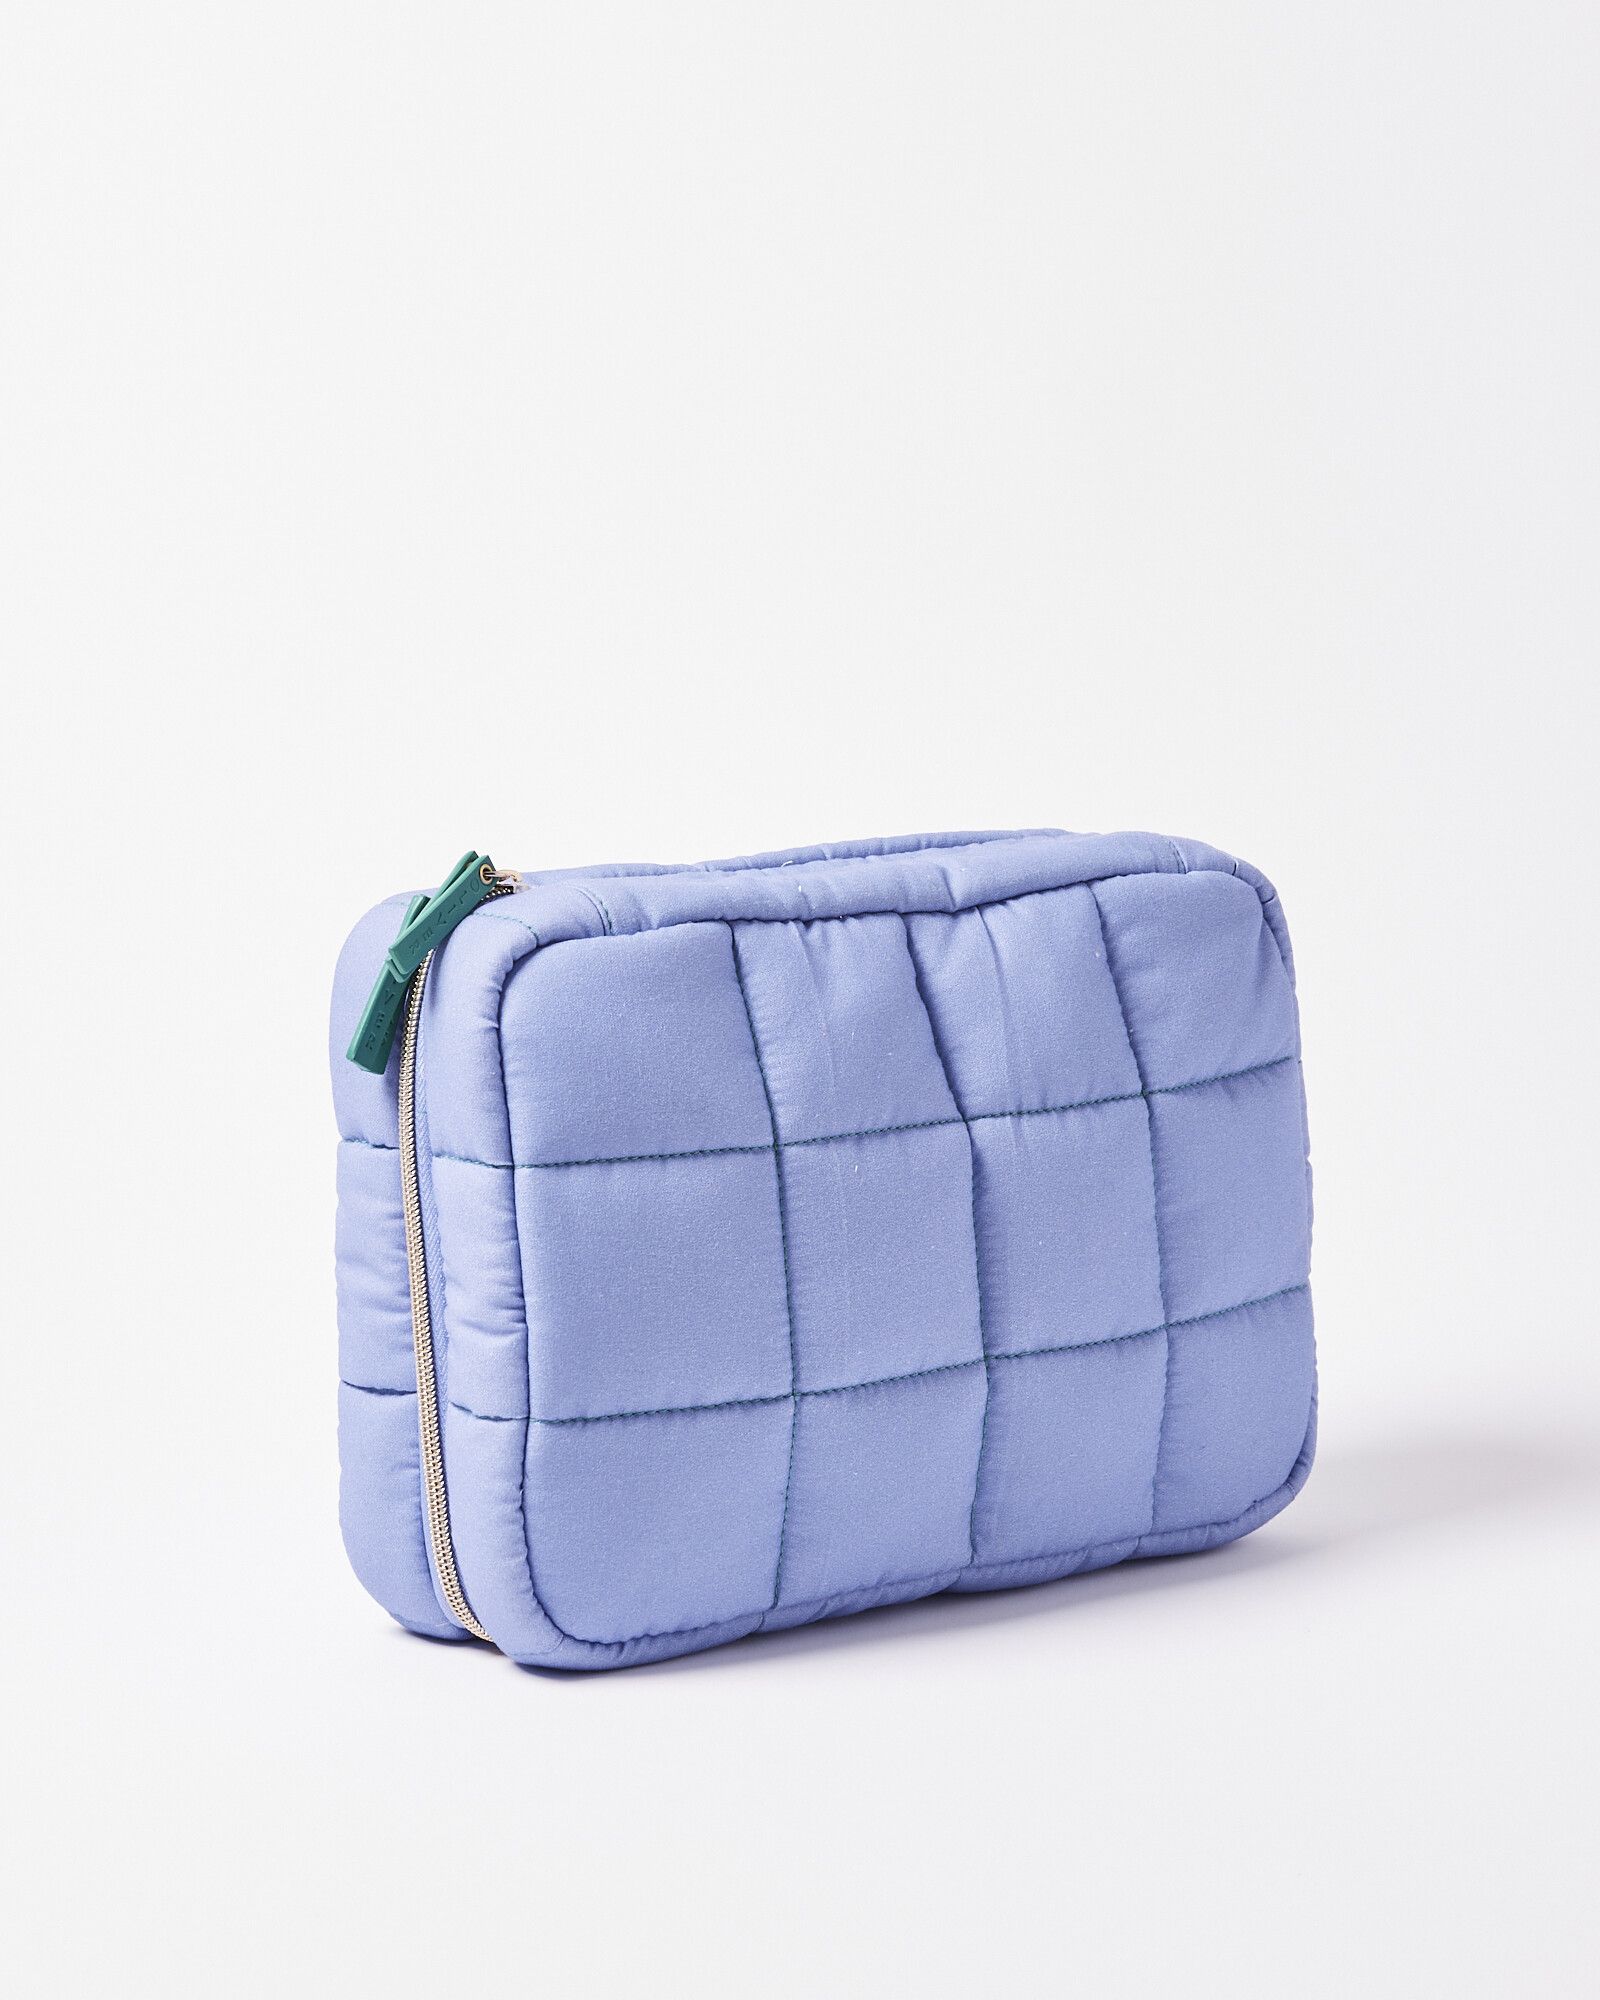 Carrie Blue Fold Out Make Up Bag Large | Oliver Bonas